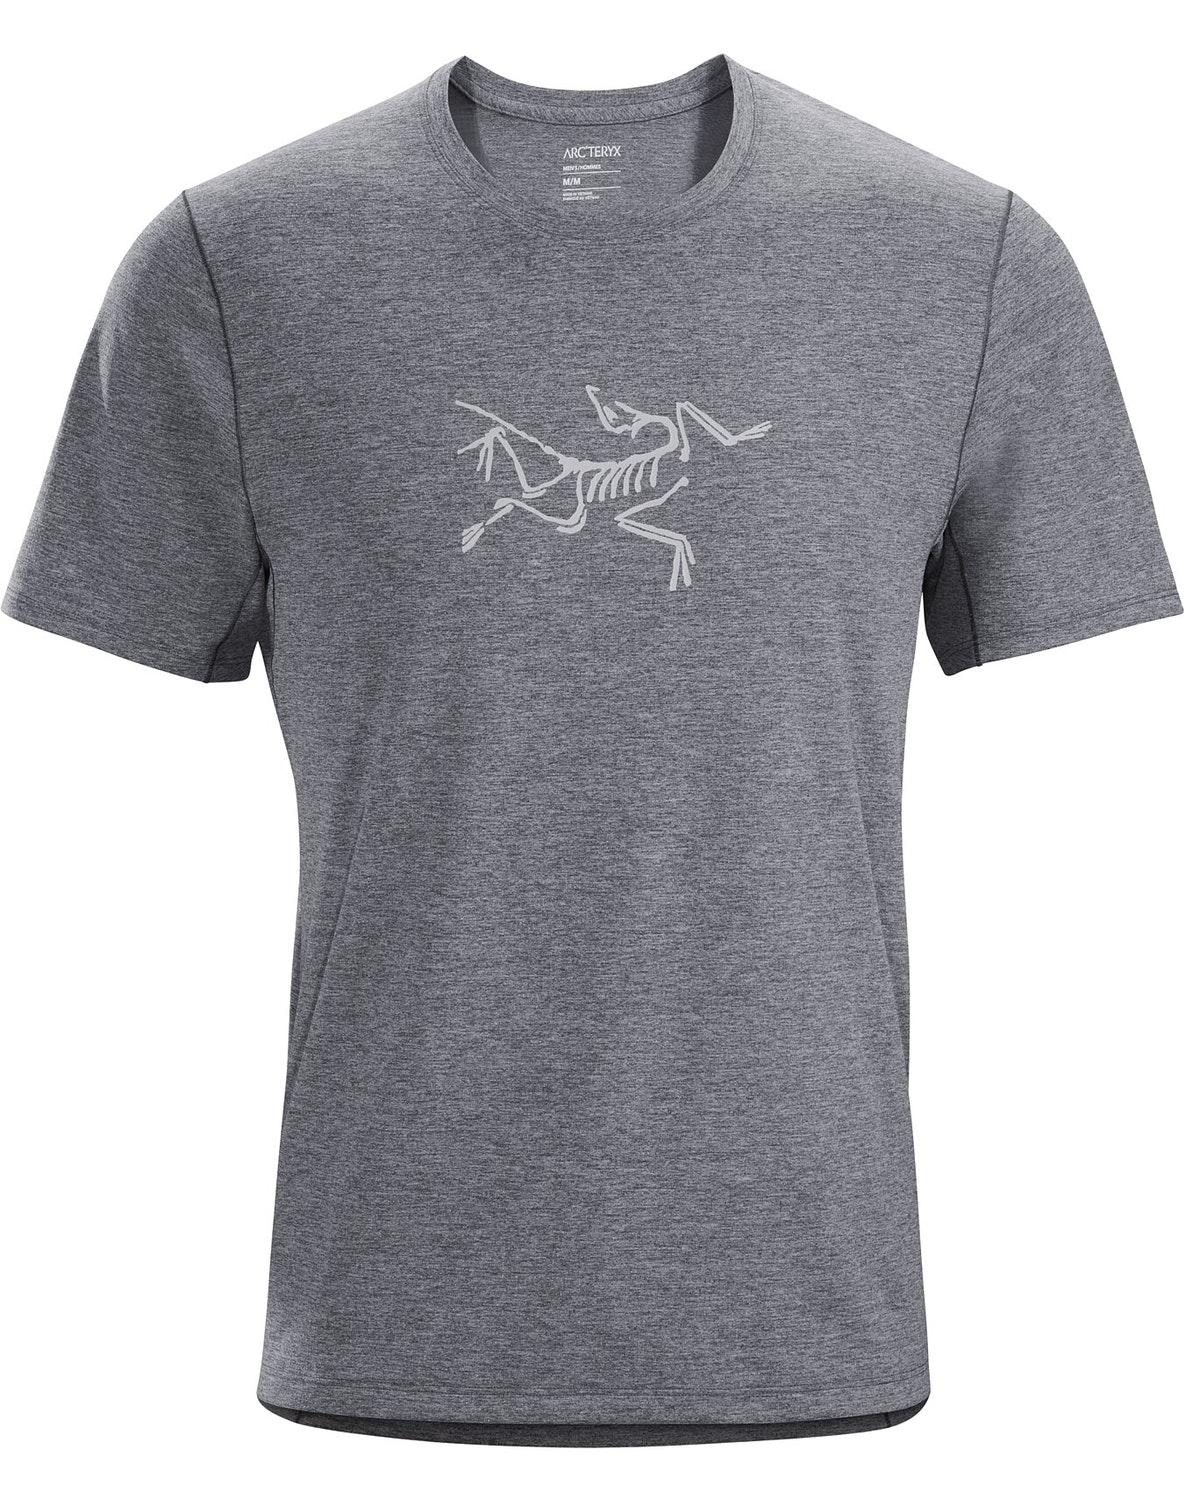 T-shirt Arc'teryx Cormac Logo Uomo Grigie - IT-35764